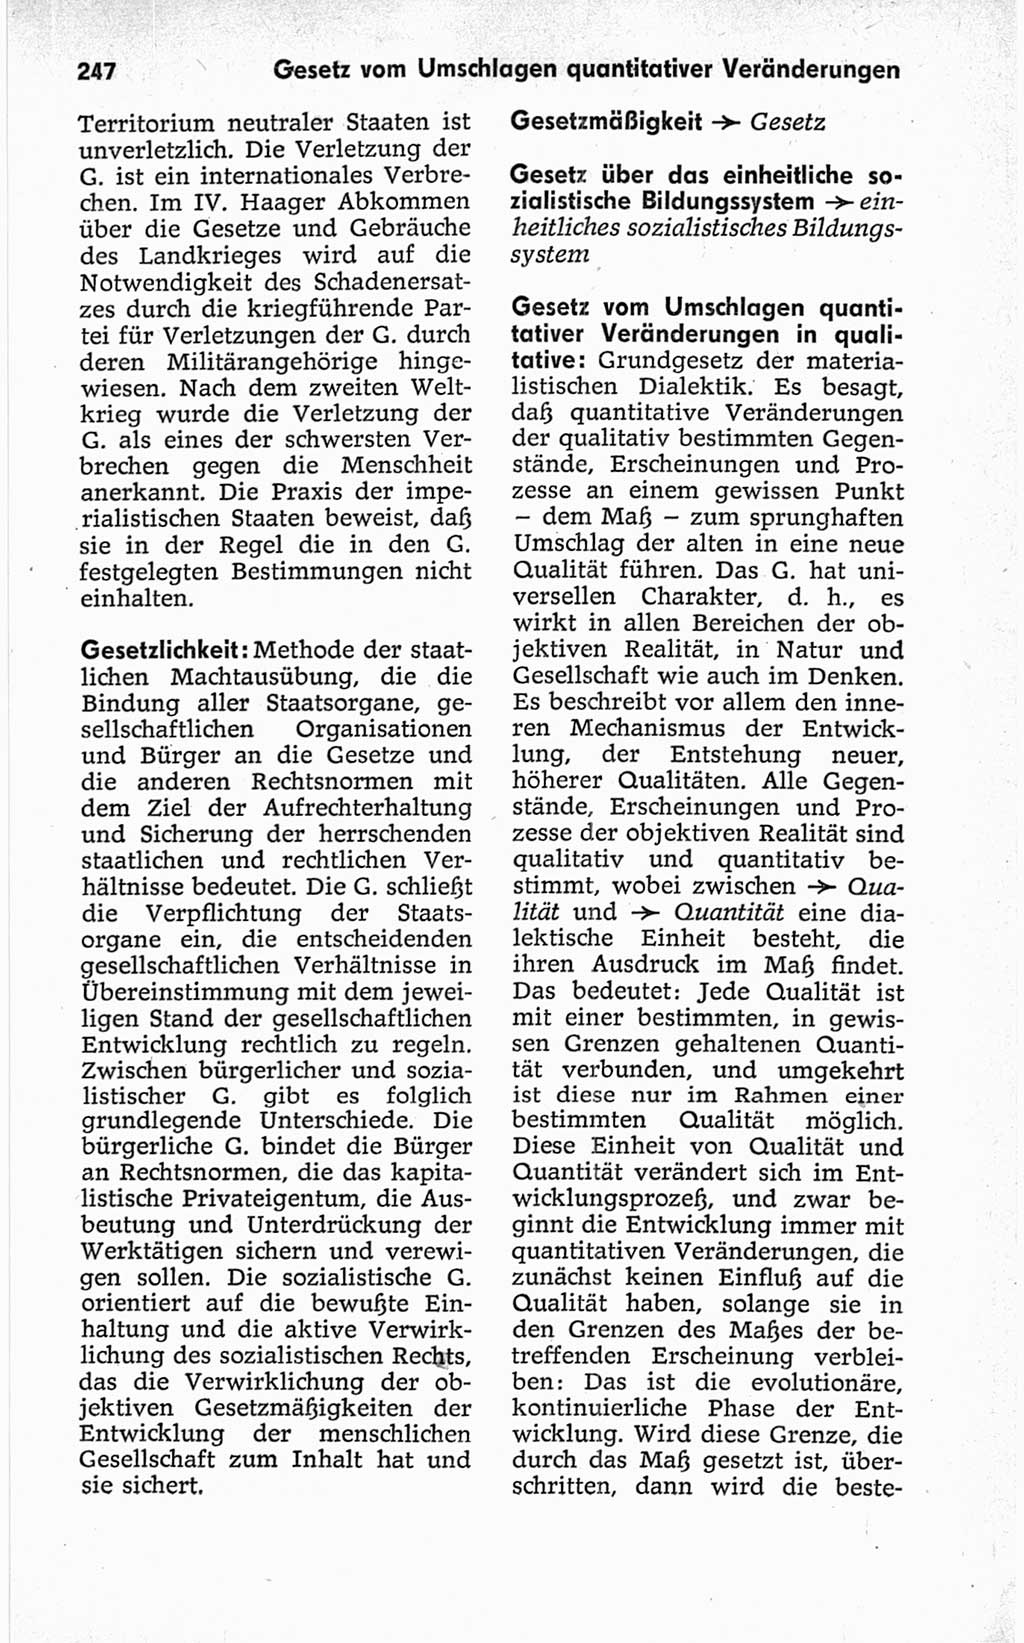 Kleines politisches Wörterbuch [Deutsche Demokratische Republik (DDR)] 1967, Seite 247 (Kl. pol. Wb. DDR 1967, S. 247)